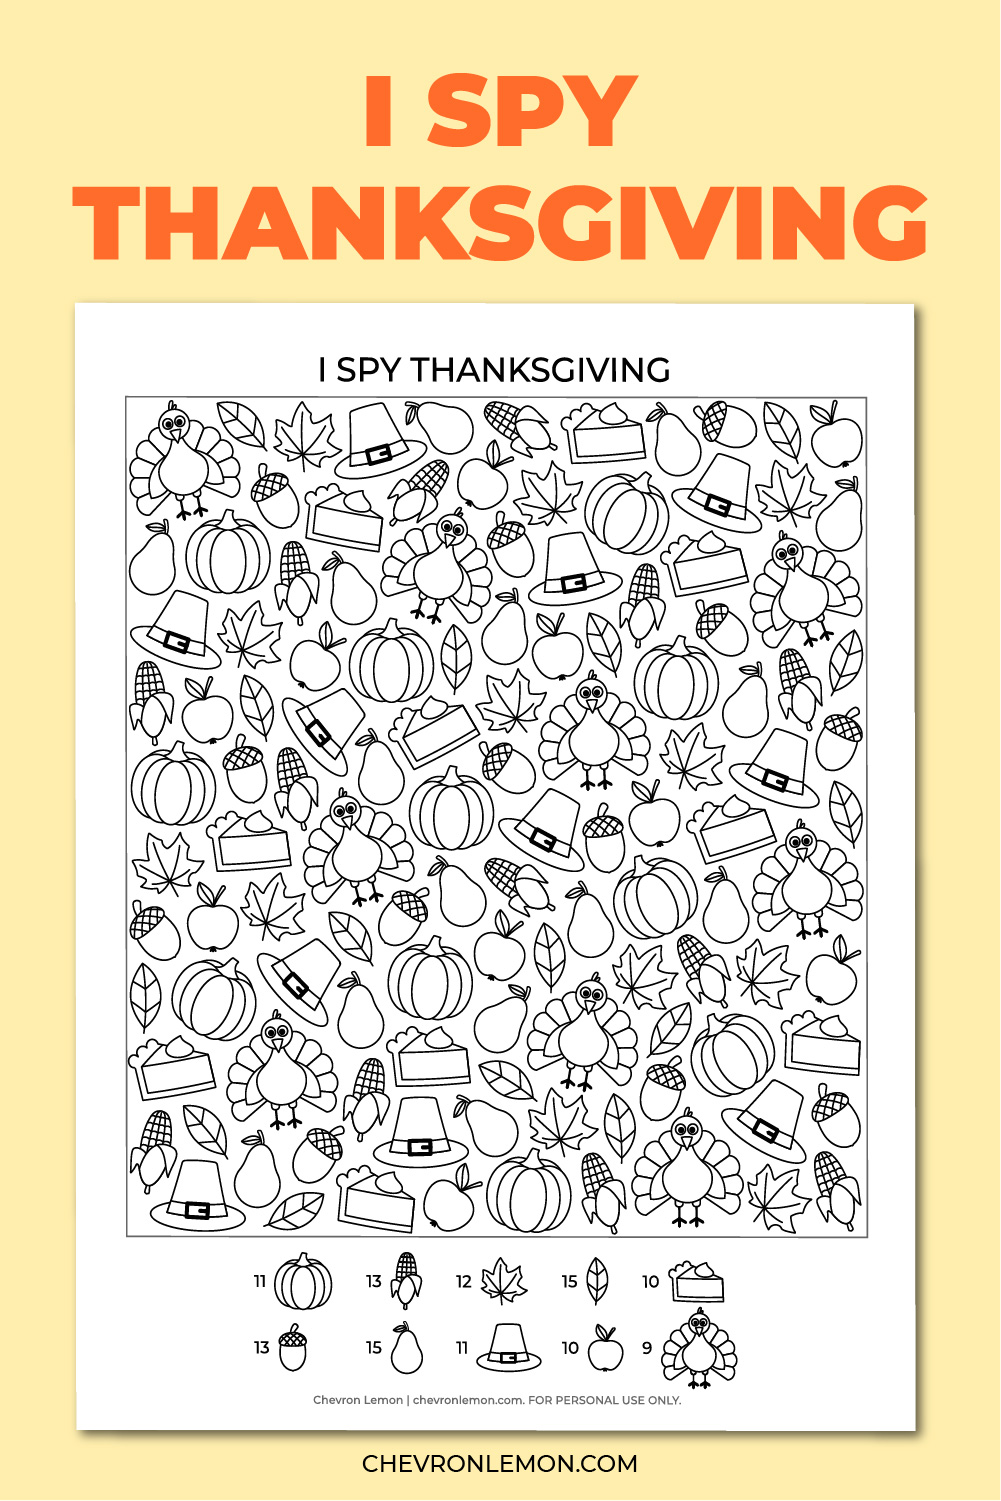 I spy Thanksgiving